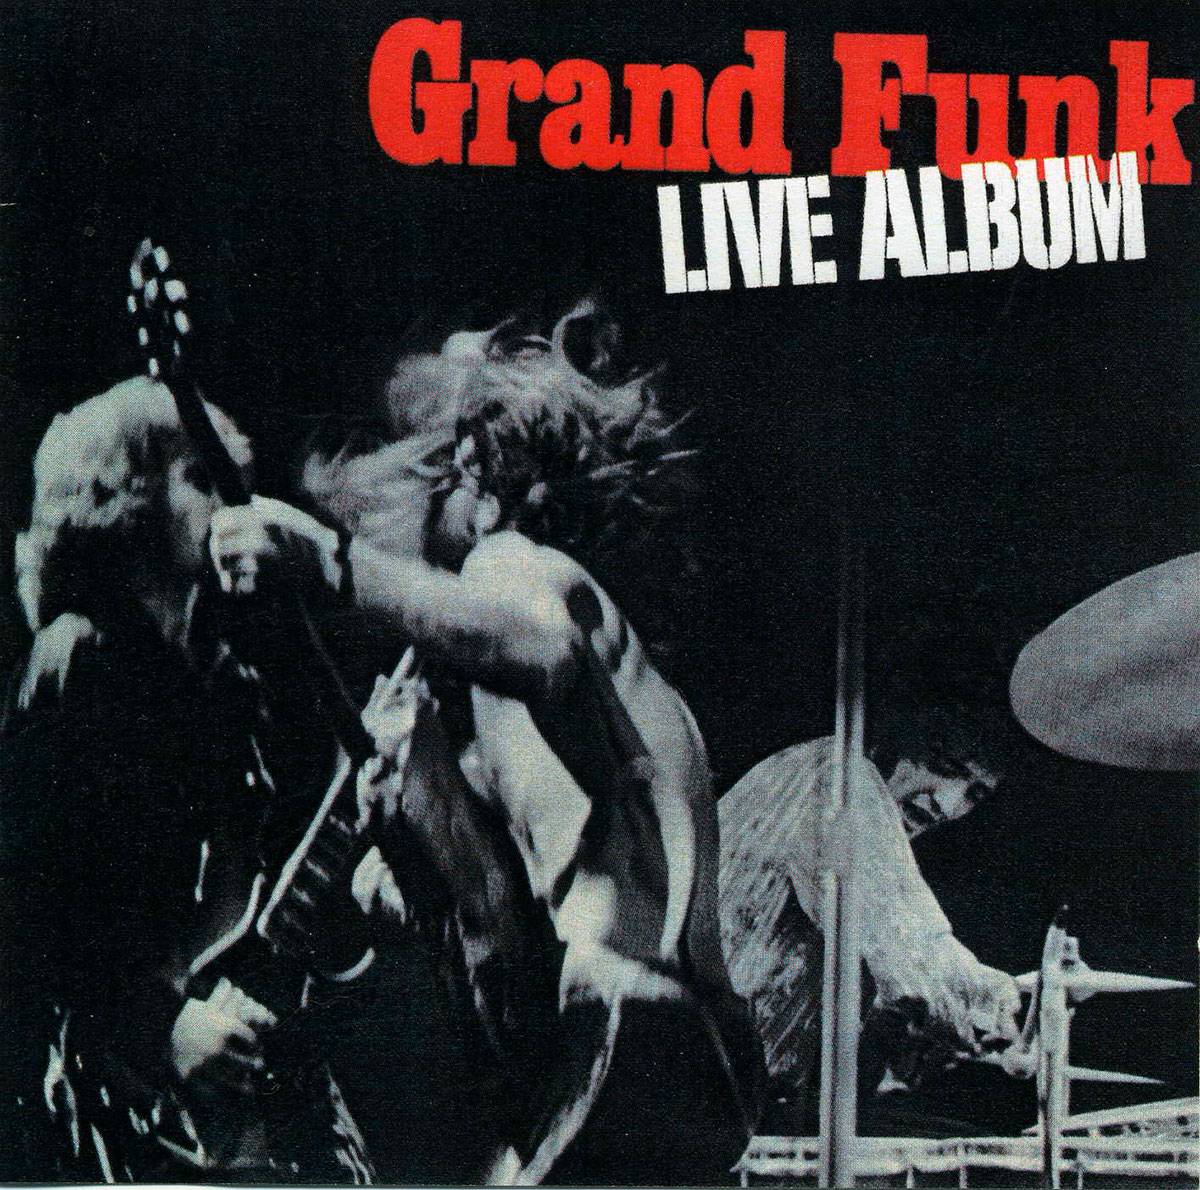 Grand Funk Railroad – Live Album (1970)